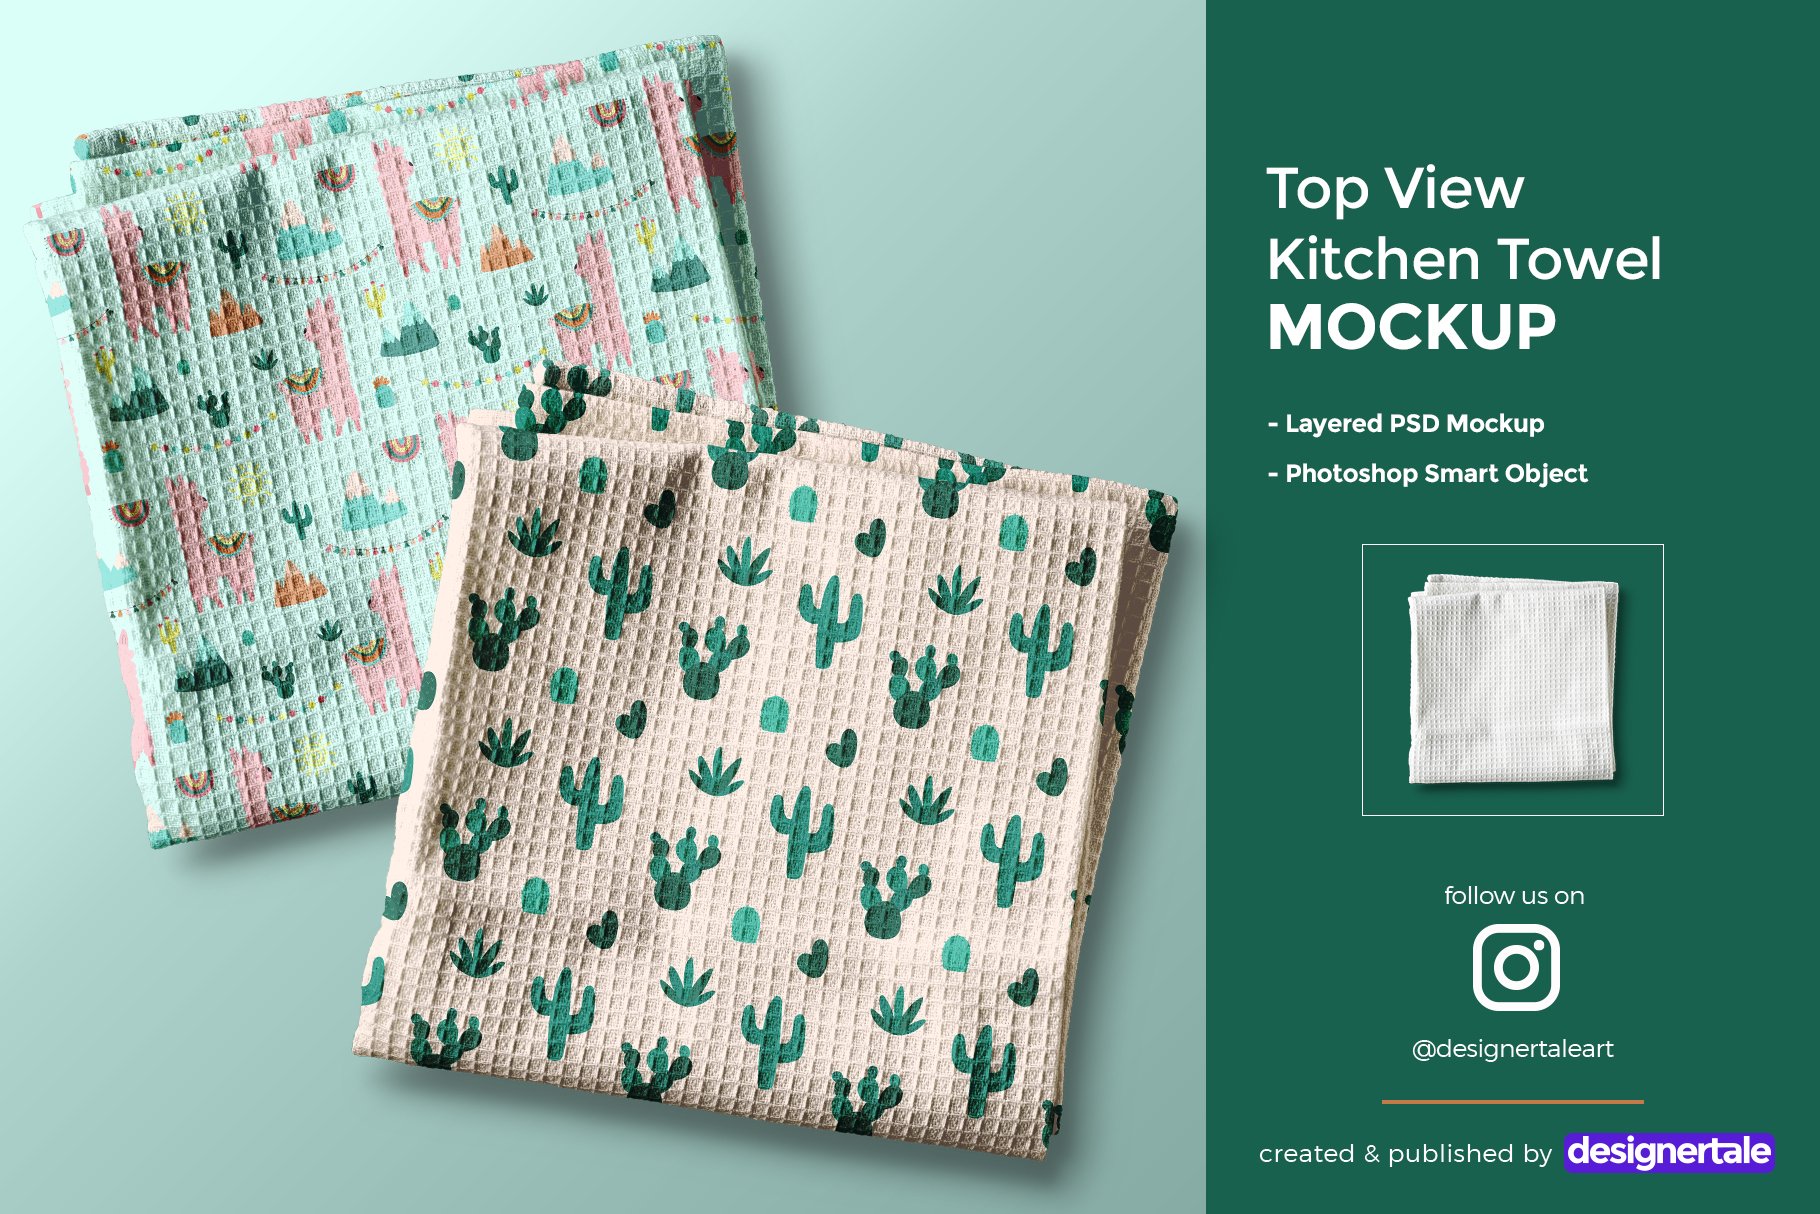 986 毛巾手帕洗碗巾PSD样机模型Top View Kitchen Towel Mockup